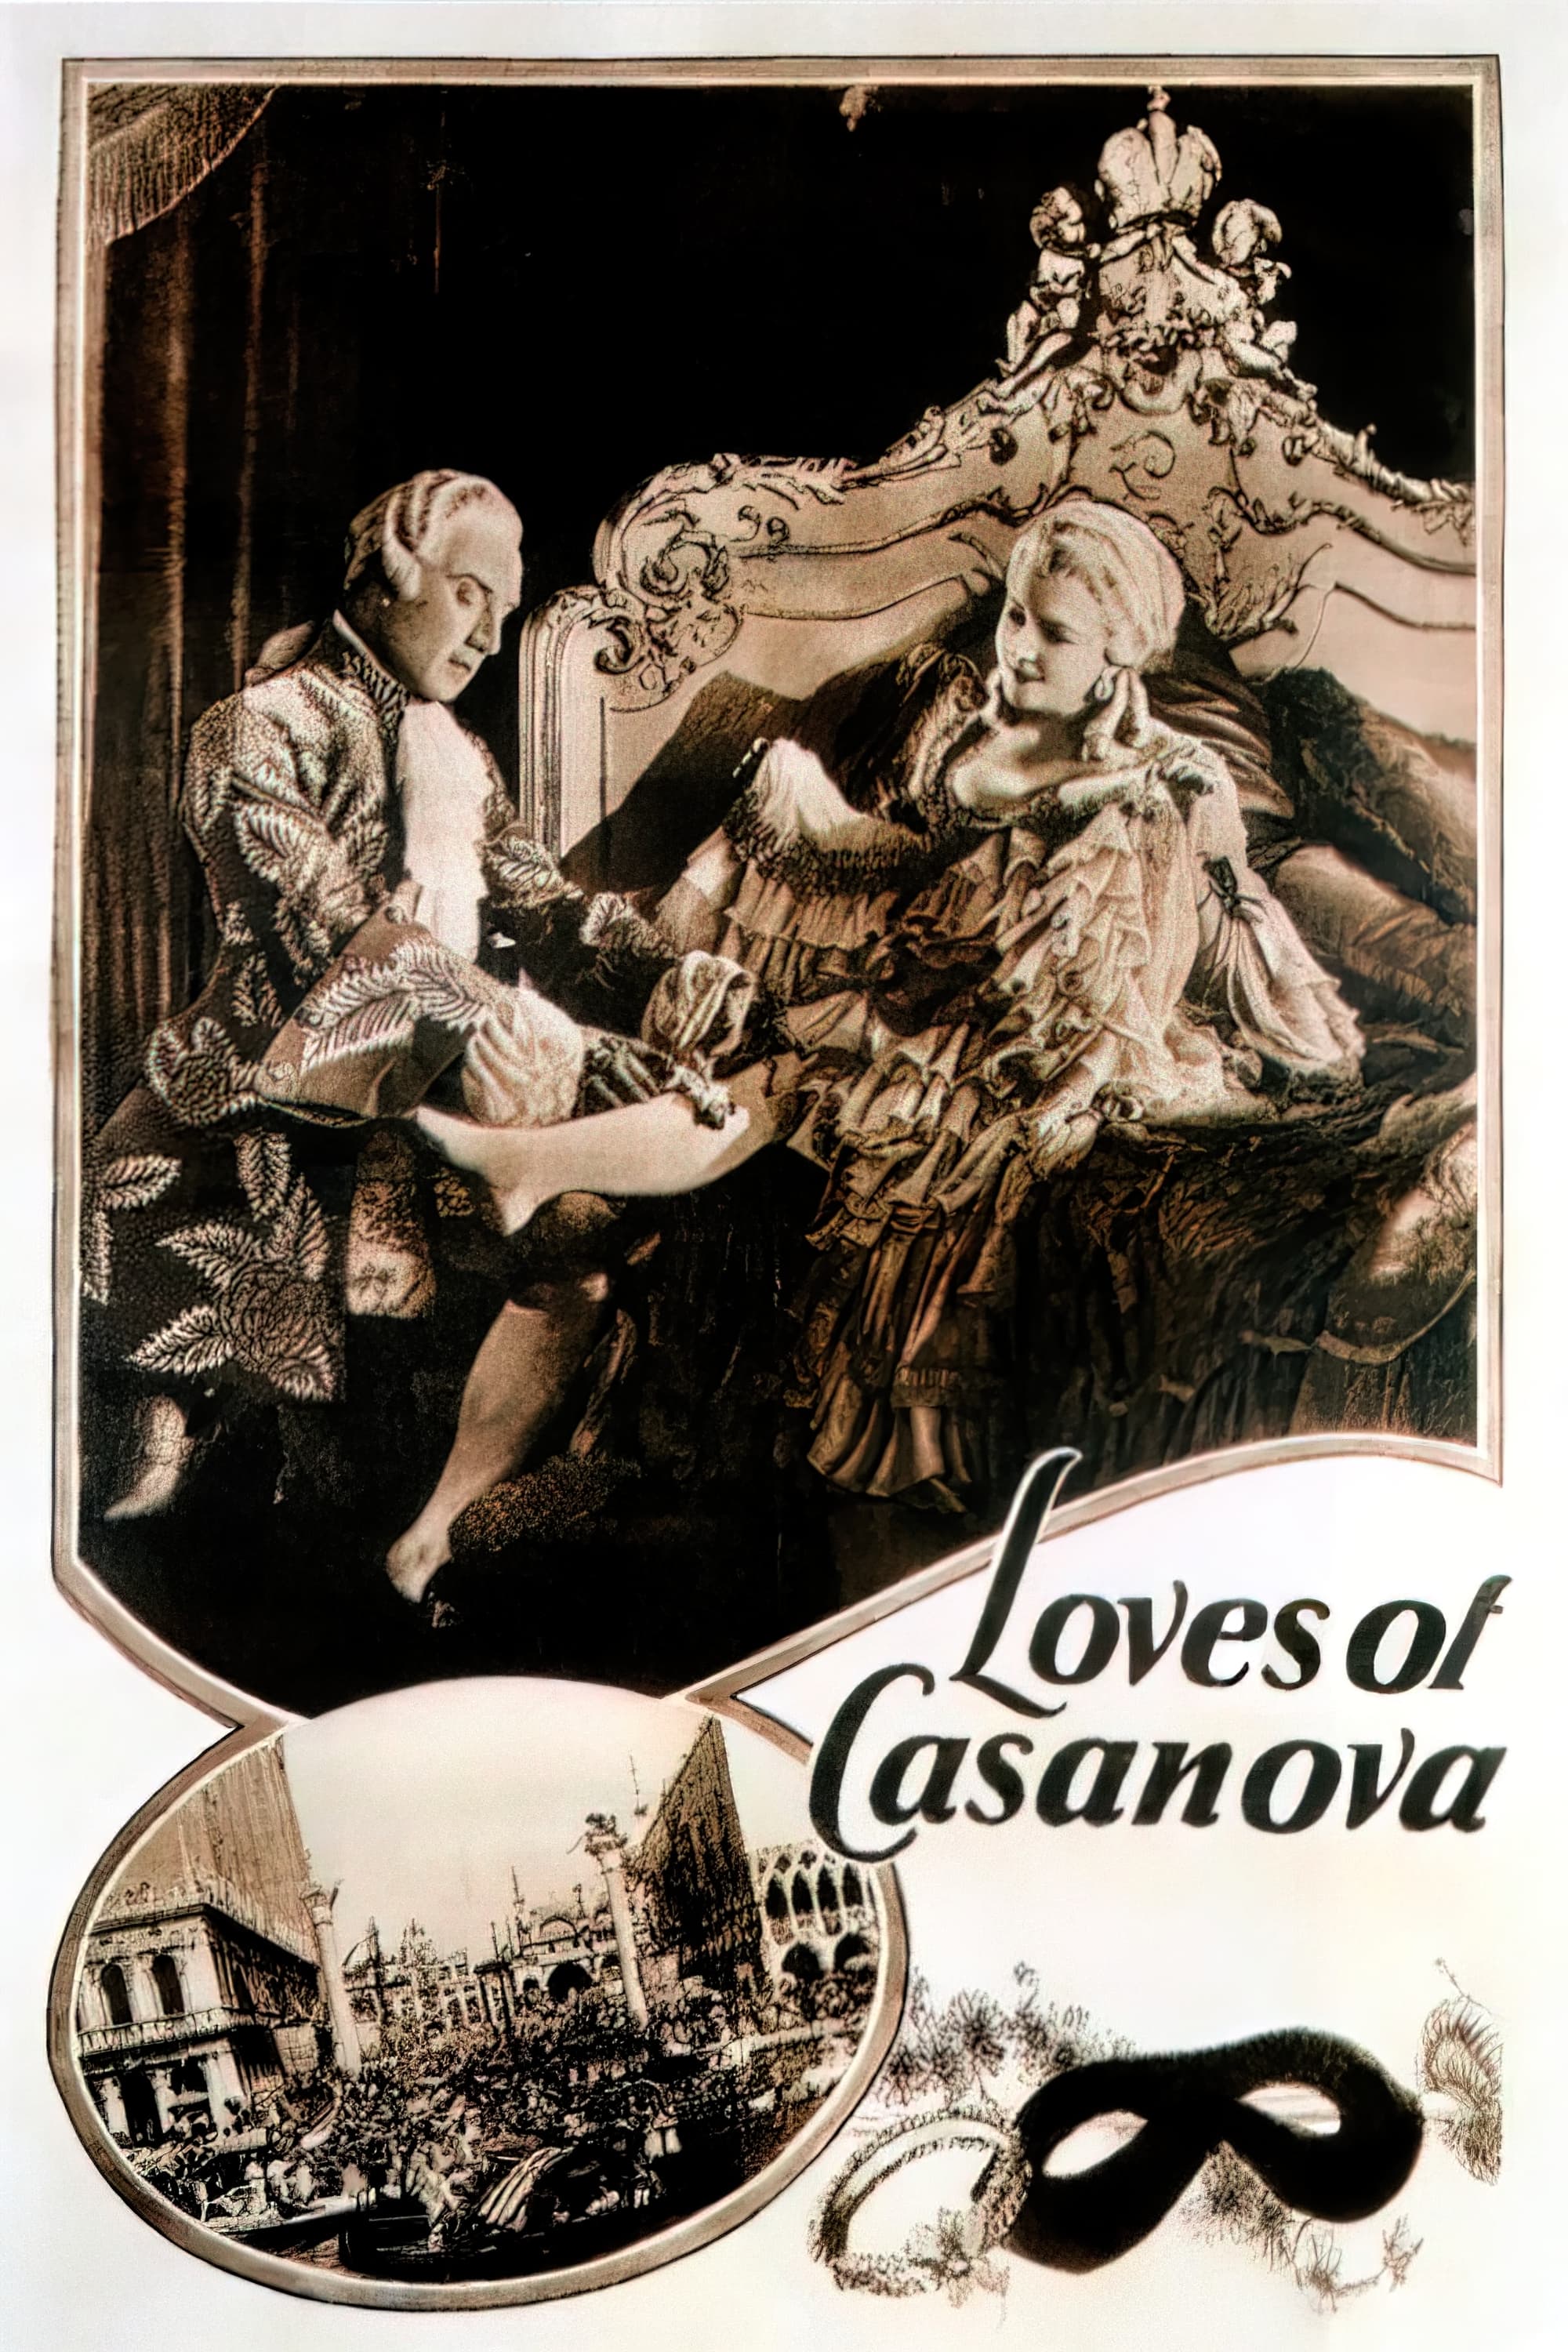 Loves of Casanova (1927)